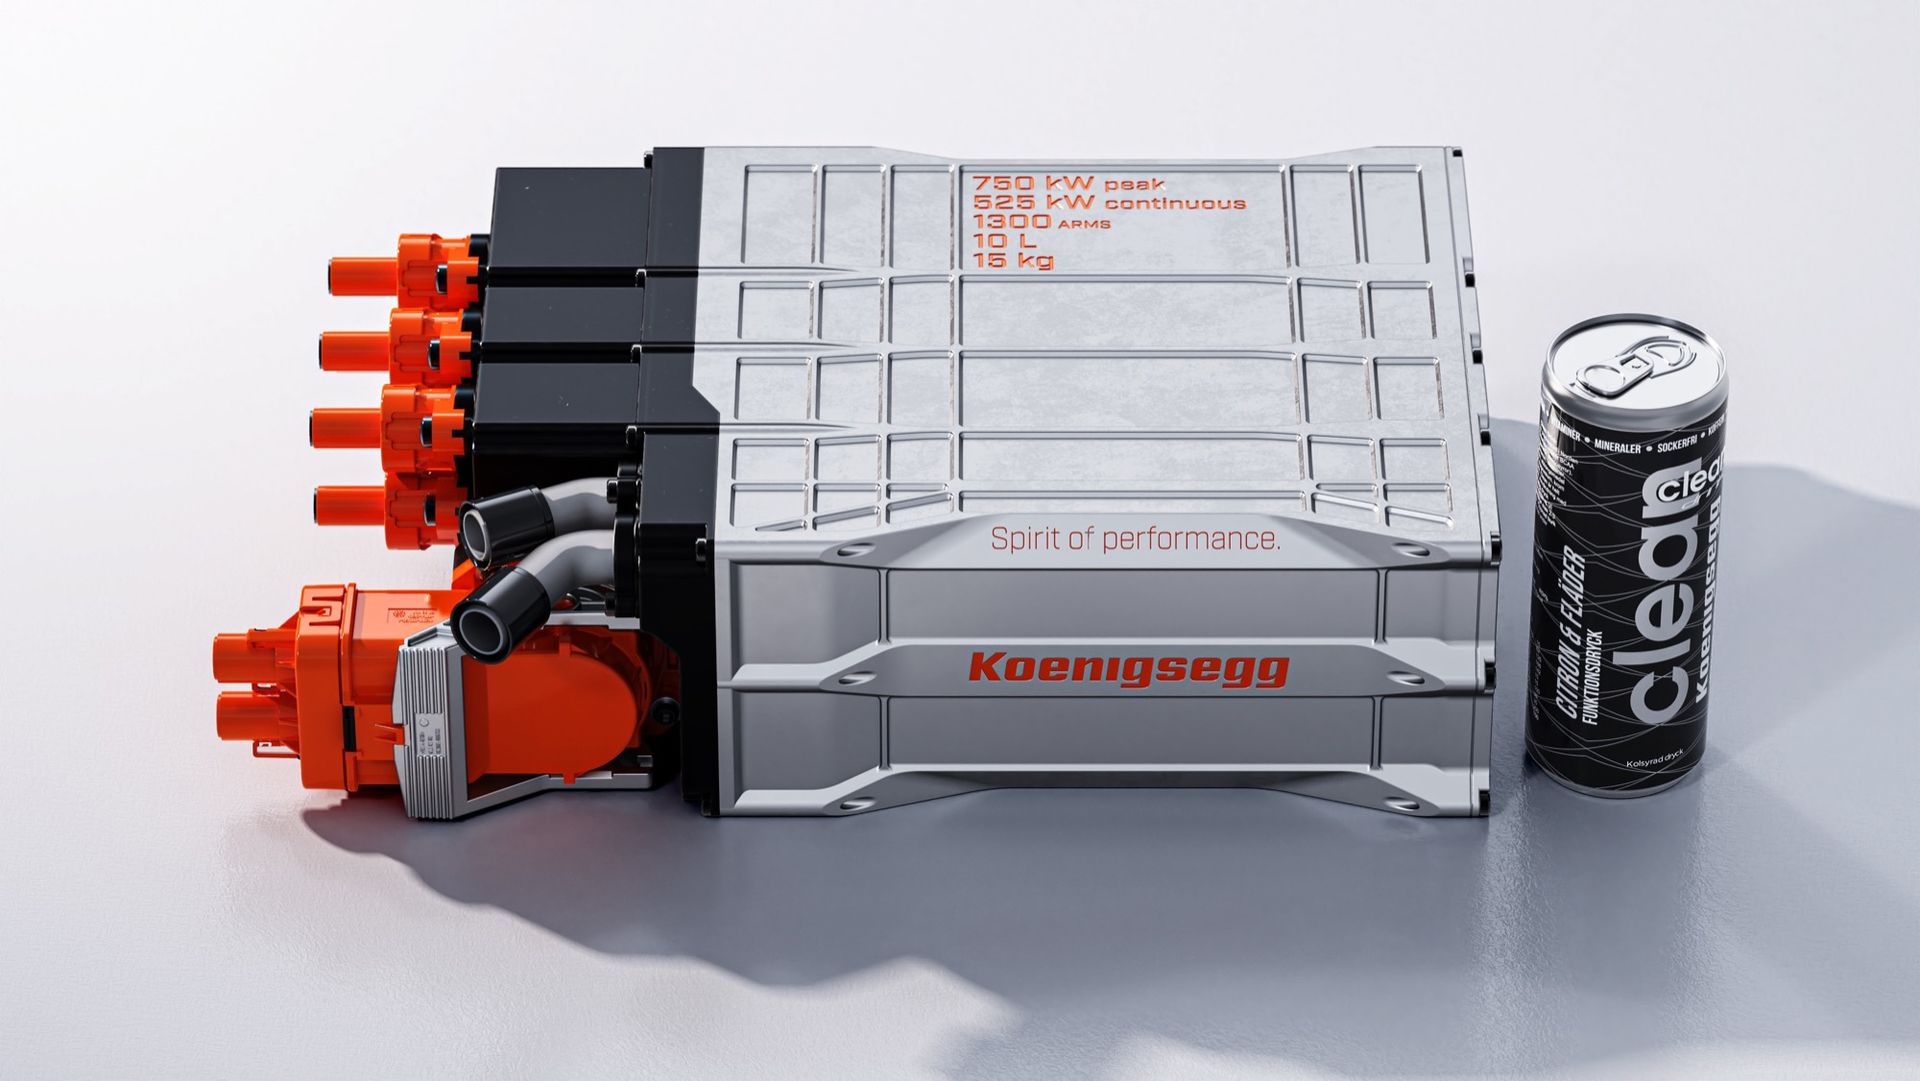 Det här är Koenigsegg David